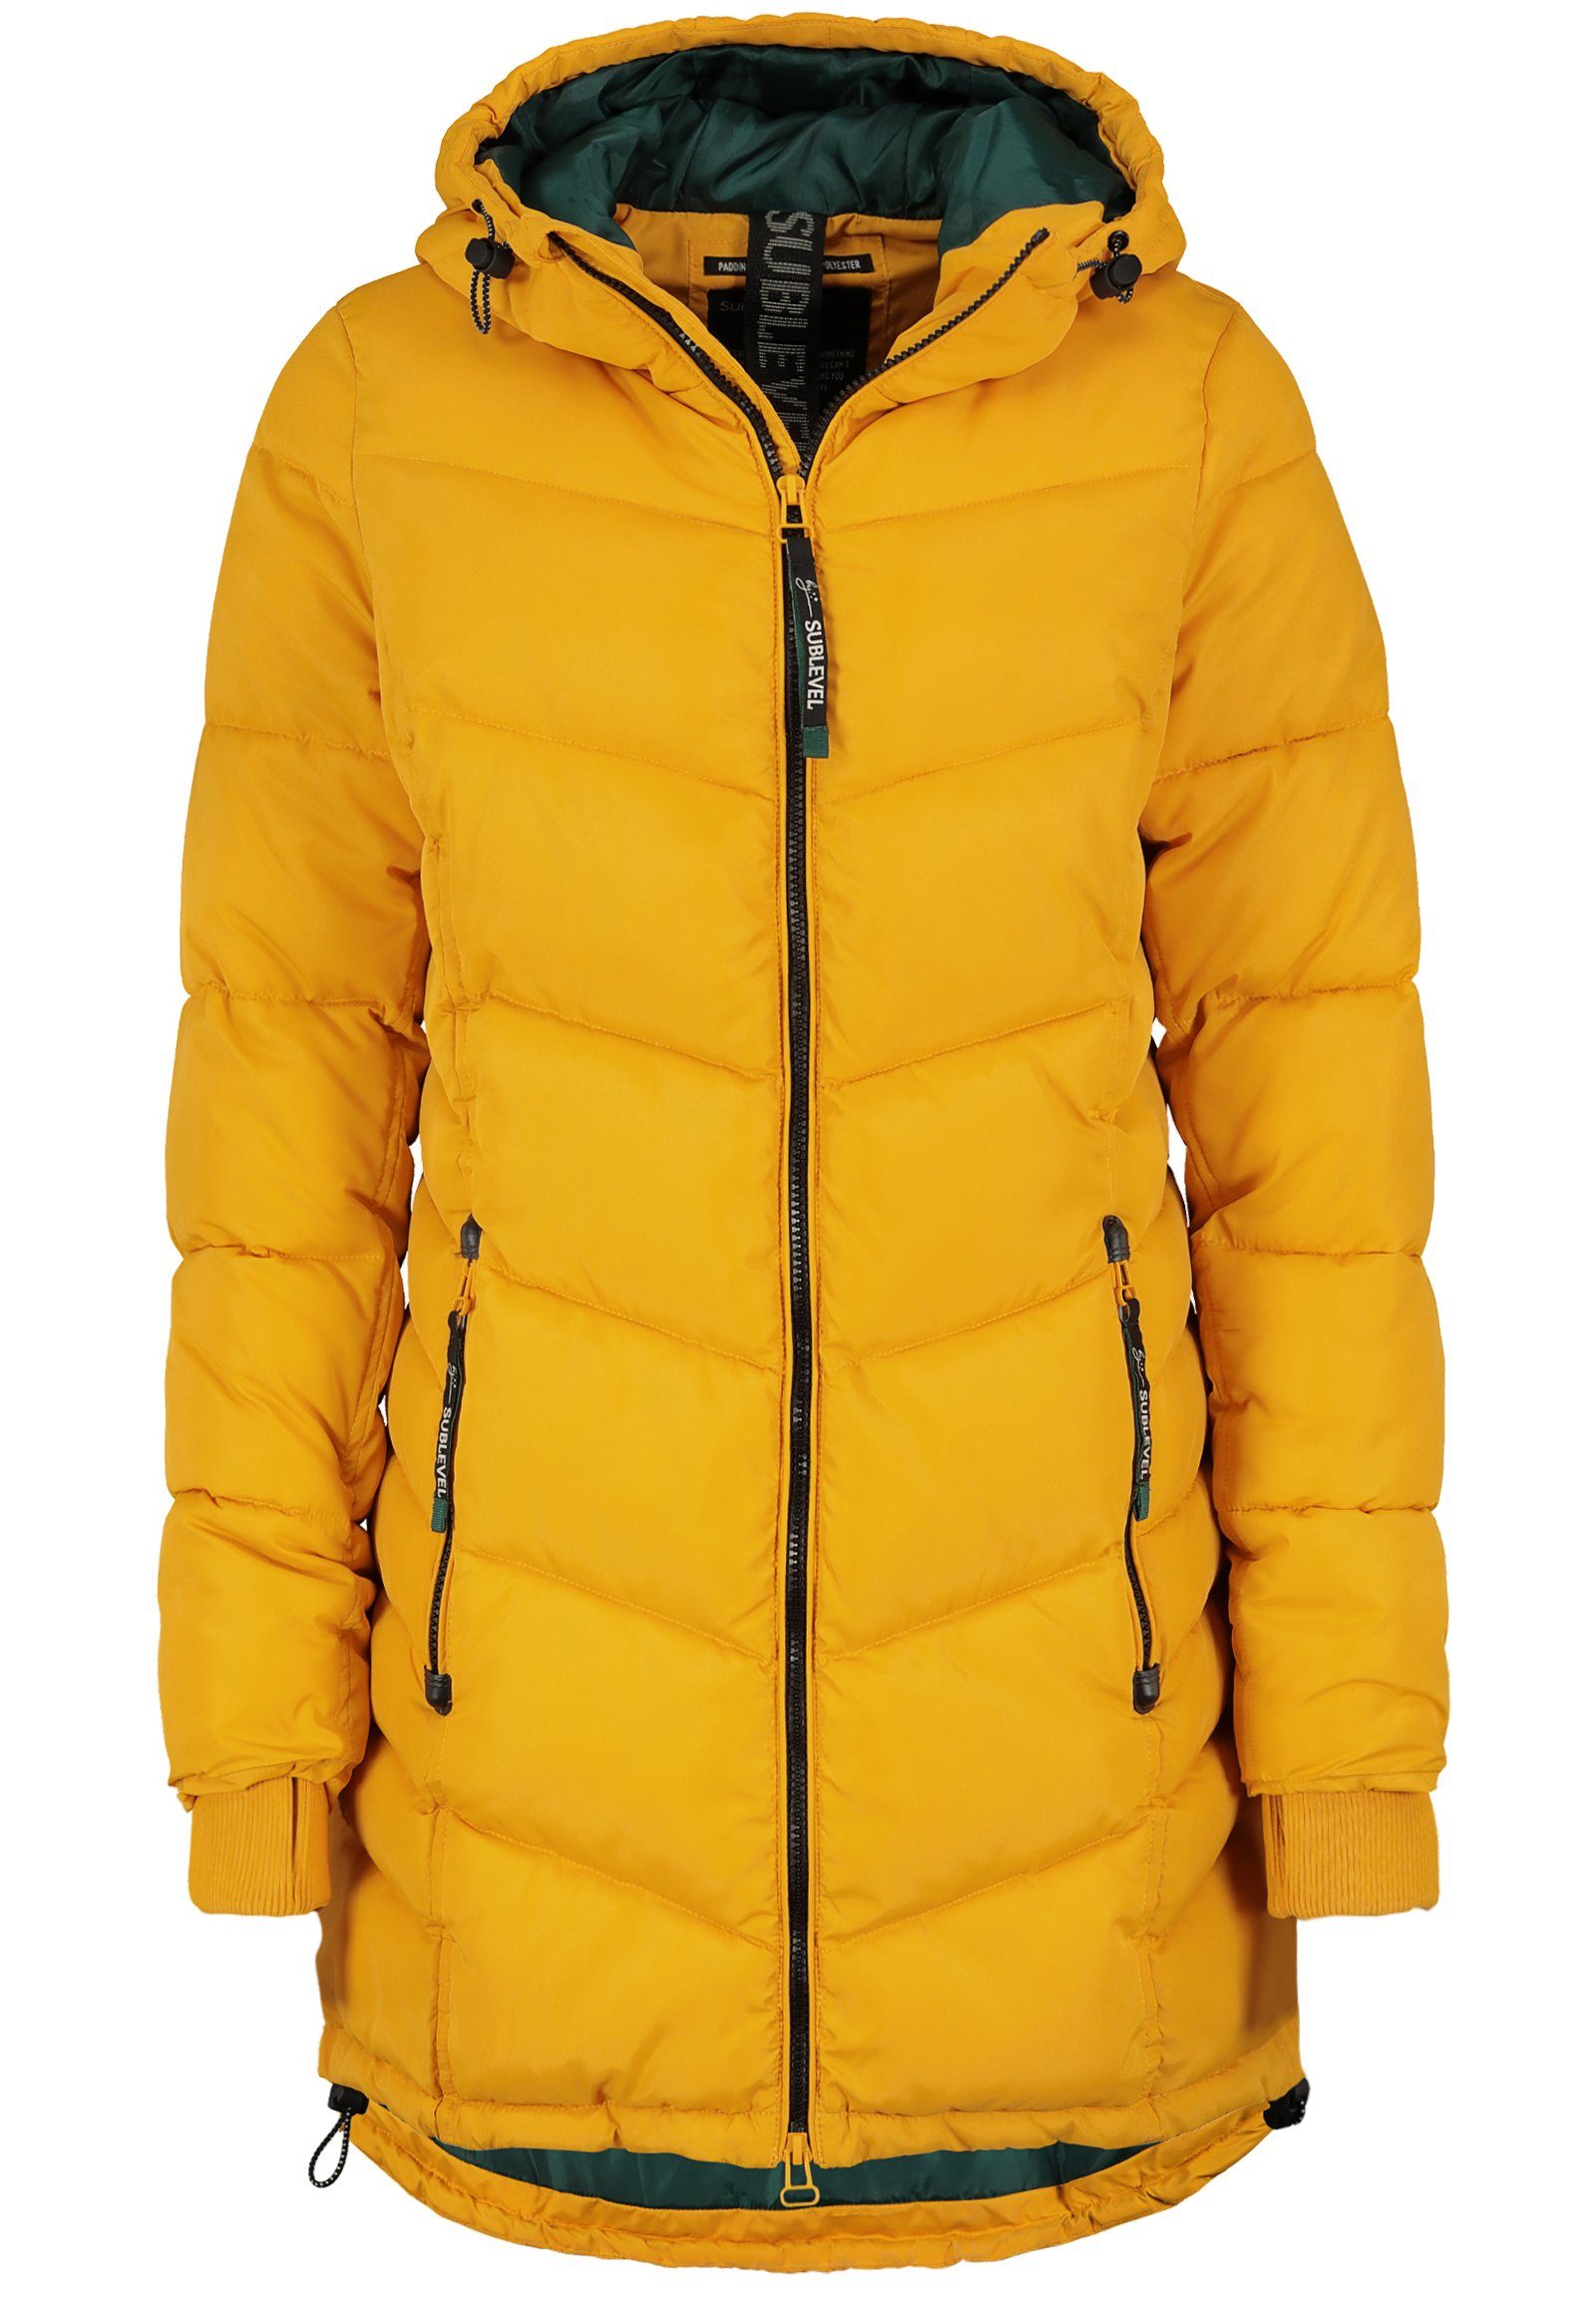 Mantel in gelb online kaufen | OTTO